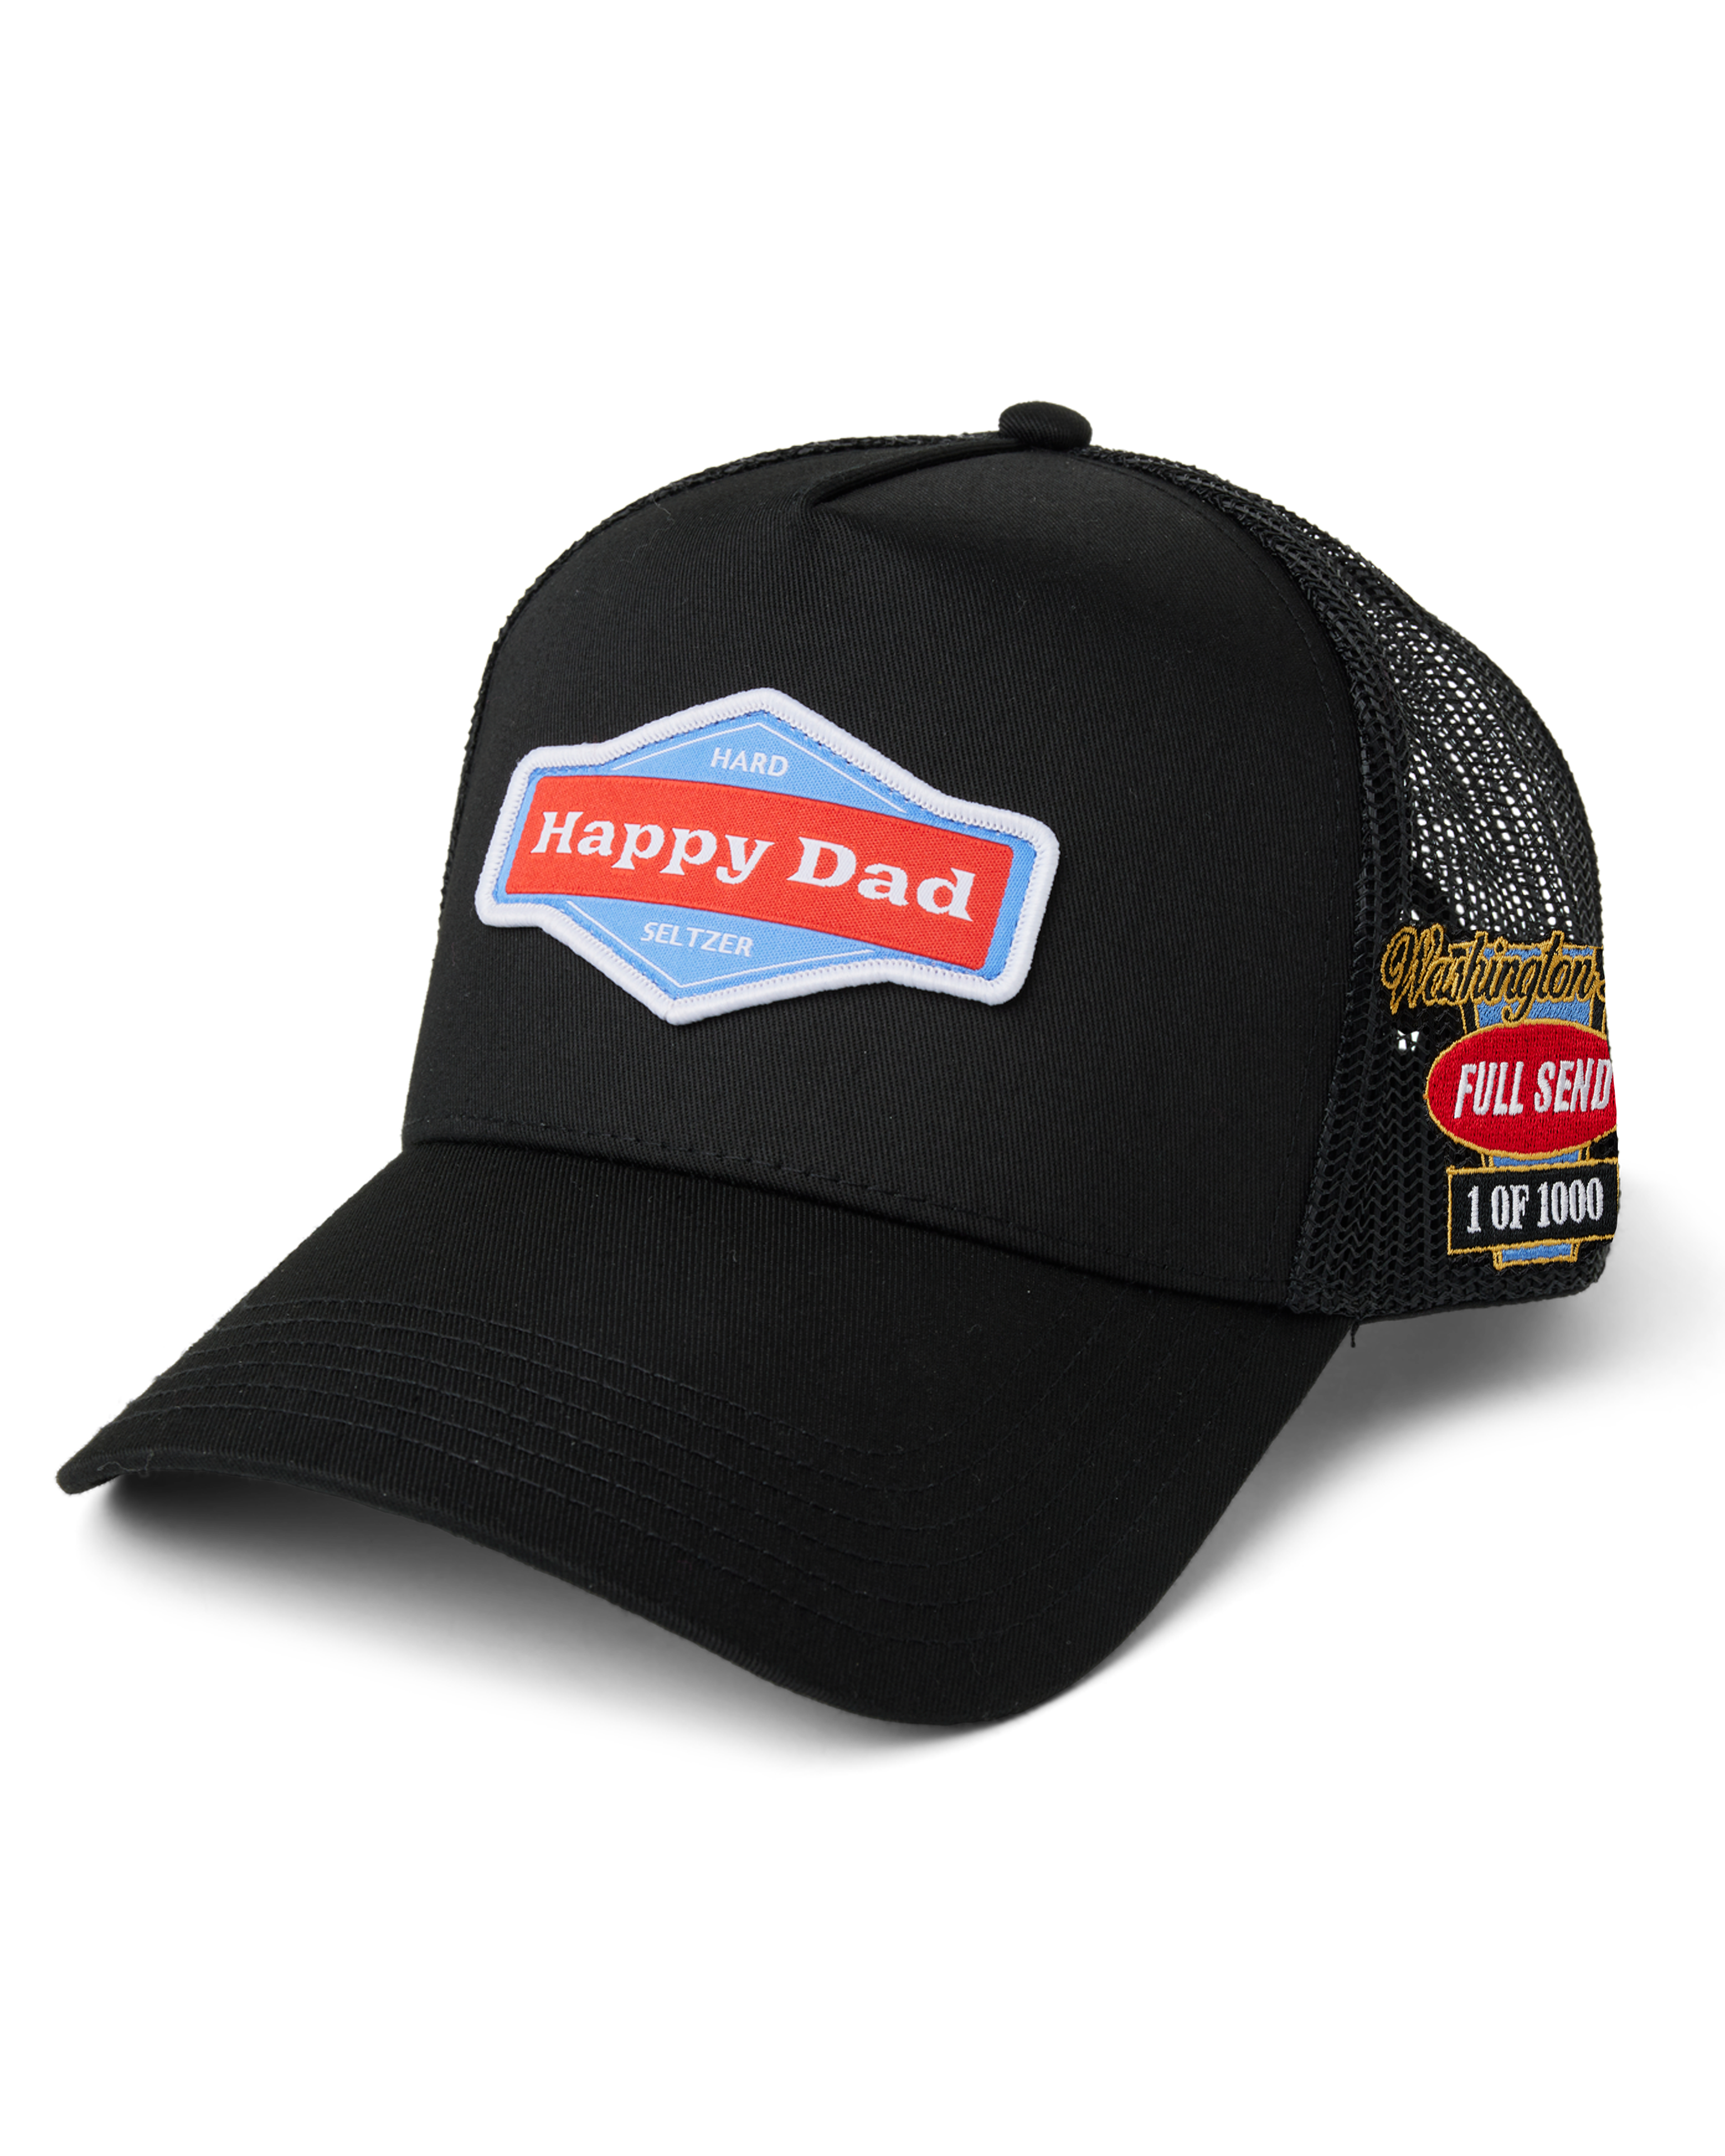 Happy Dad Hats